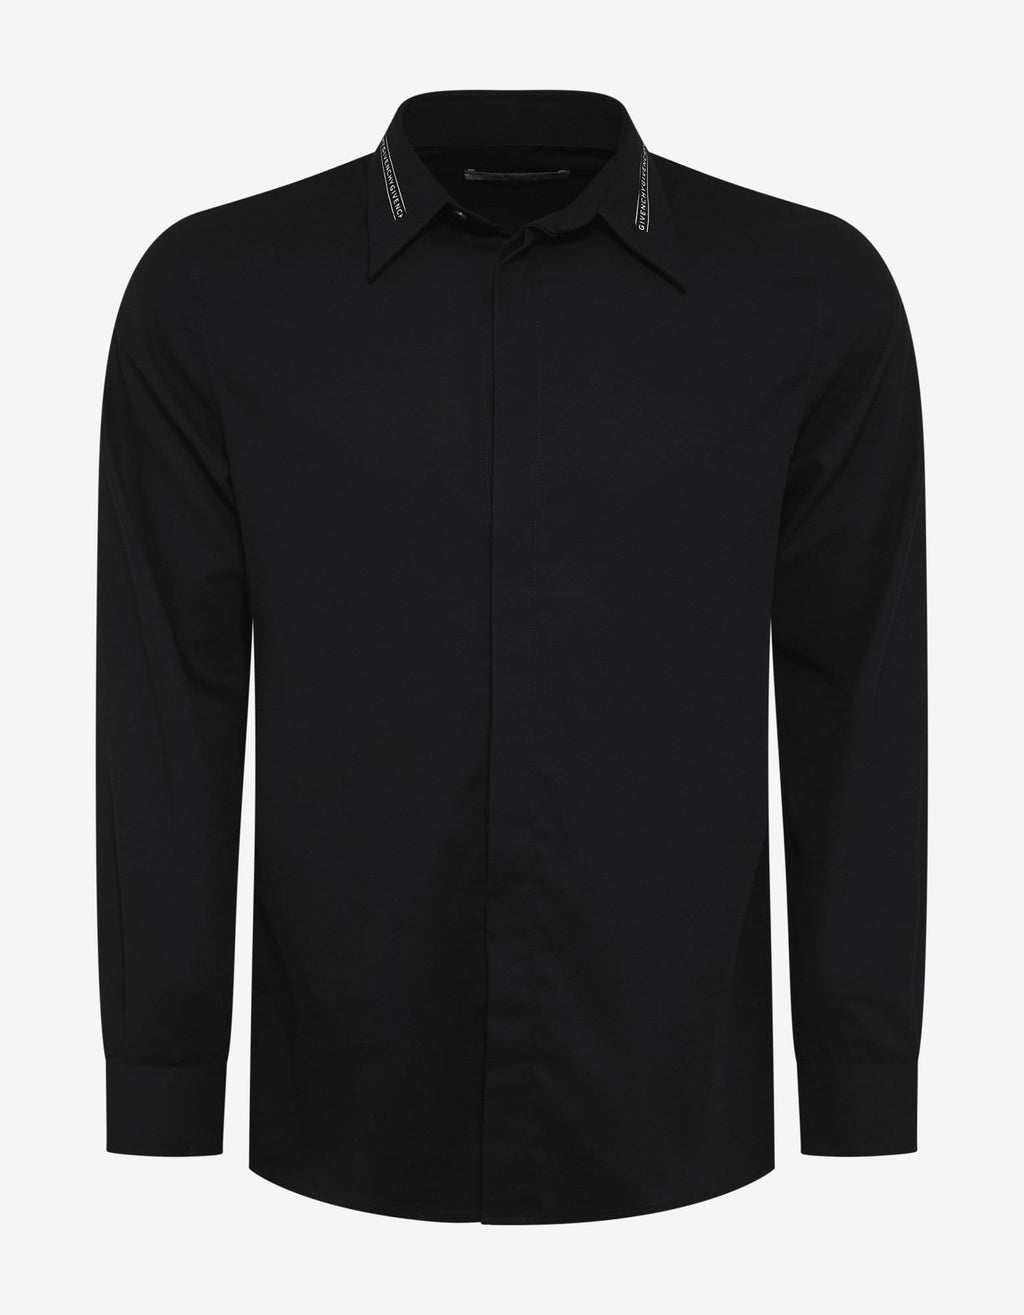 Givenchy Givenchy Black Logo Collar Shirt